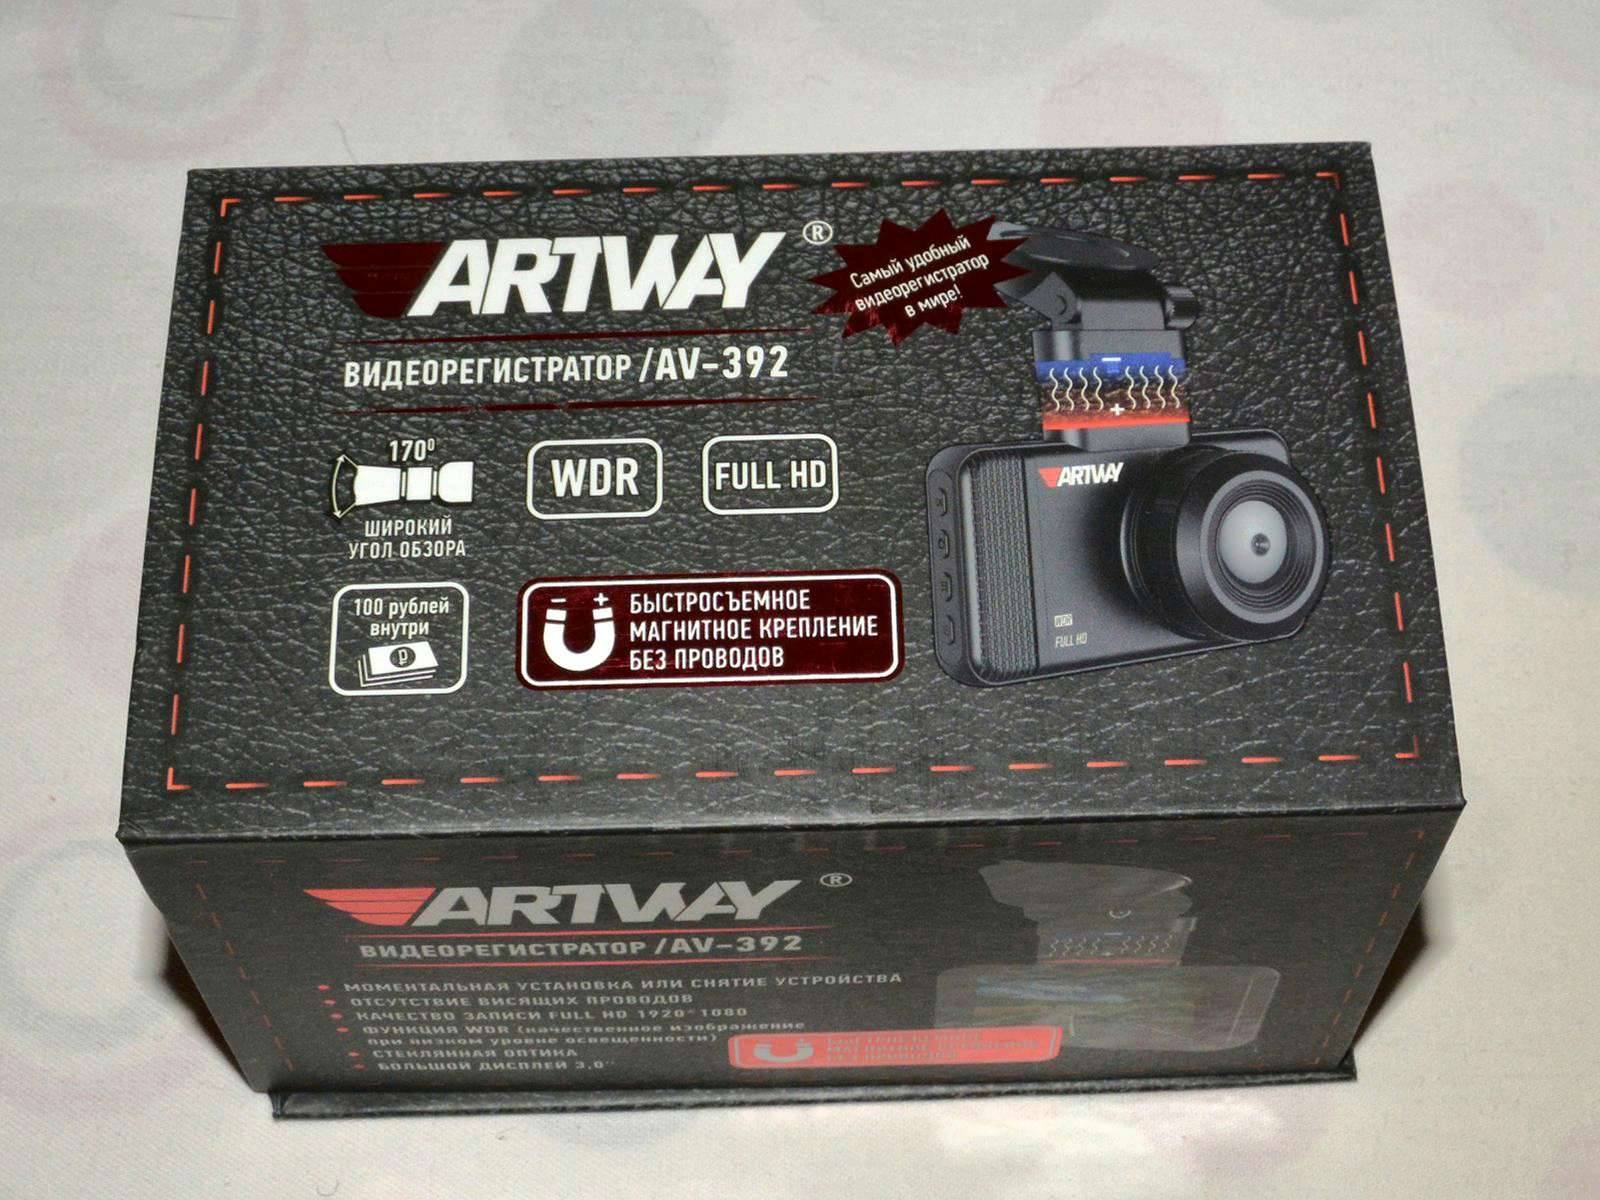 Отзывы об artway av-392. рейтинг покупателей и мнения пользователей на видеорегистраторы в интернет-магазине гиперавто (66717)